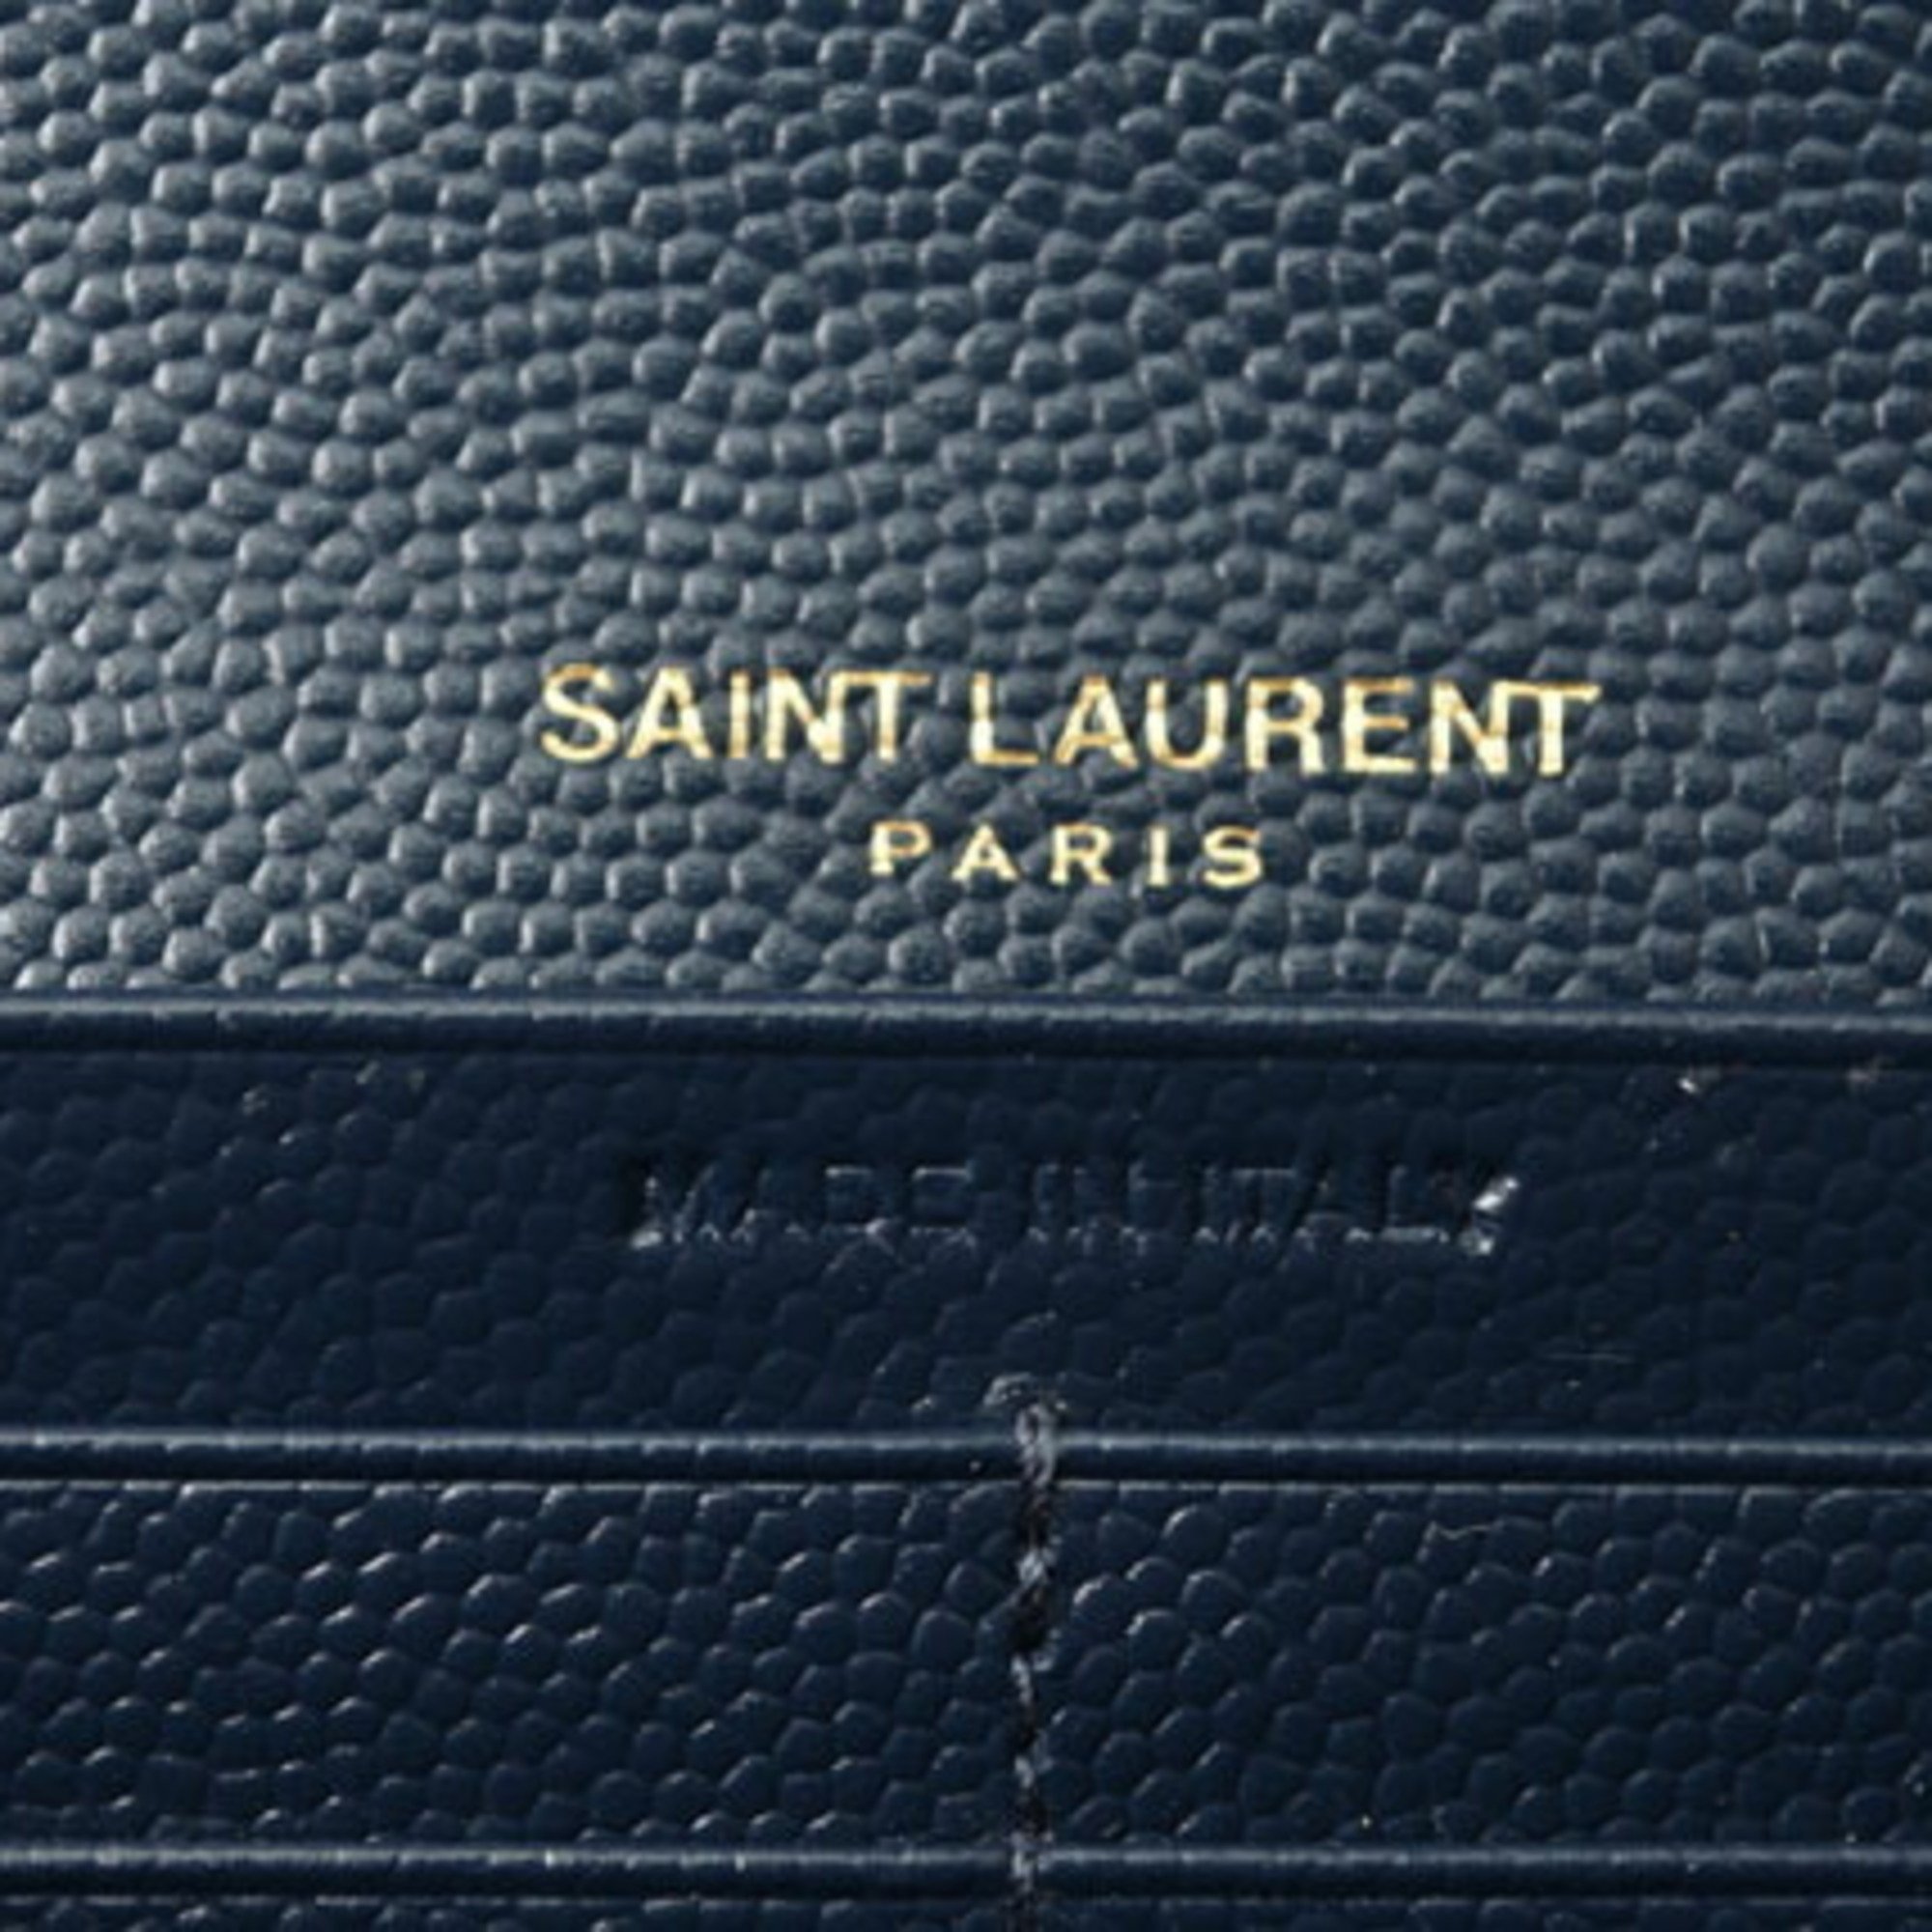 Yves Saint Laurent Saint Laurent Paris Wallet SAINT LAURENT PARIS Long Dark Navy 372264 BOW01 4128 Outlet